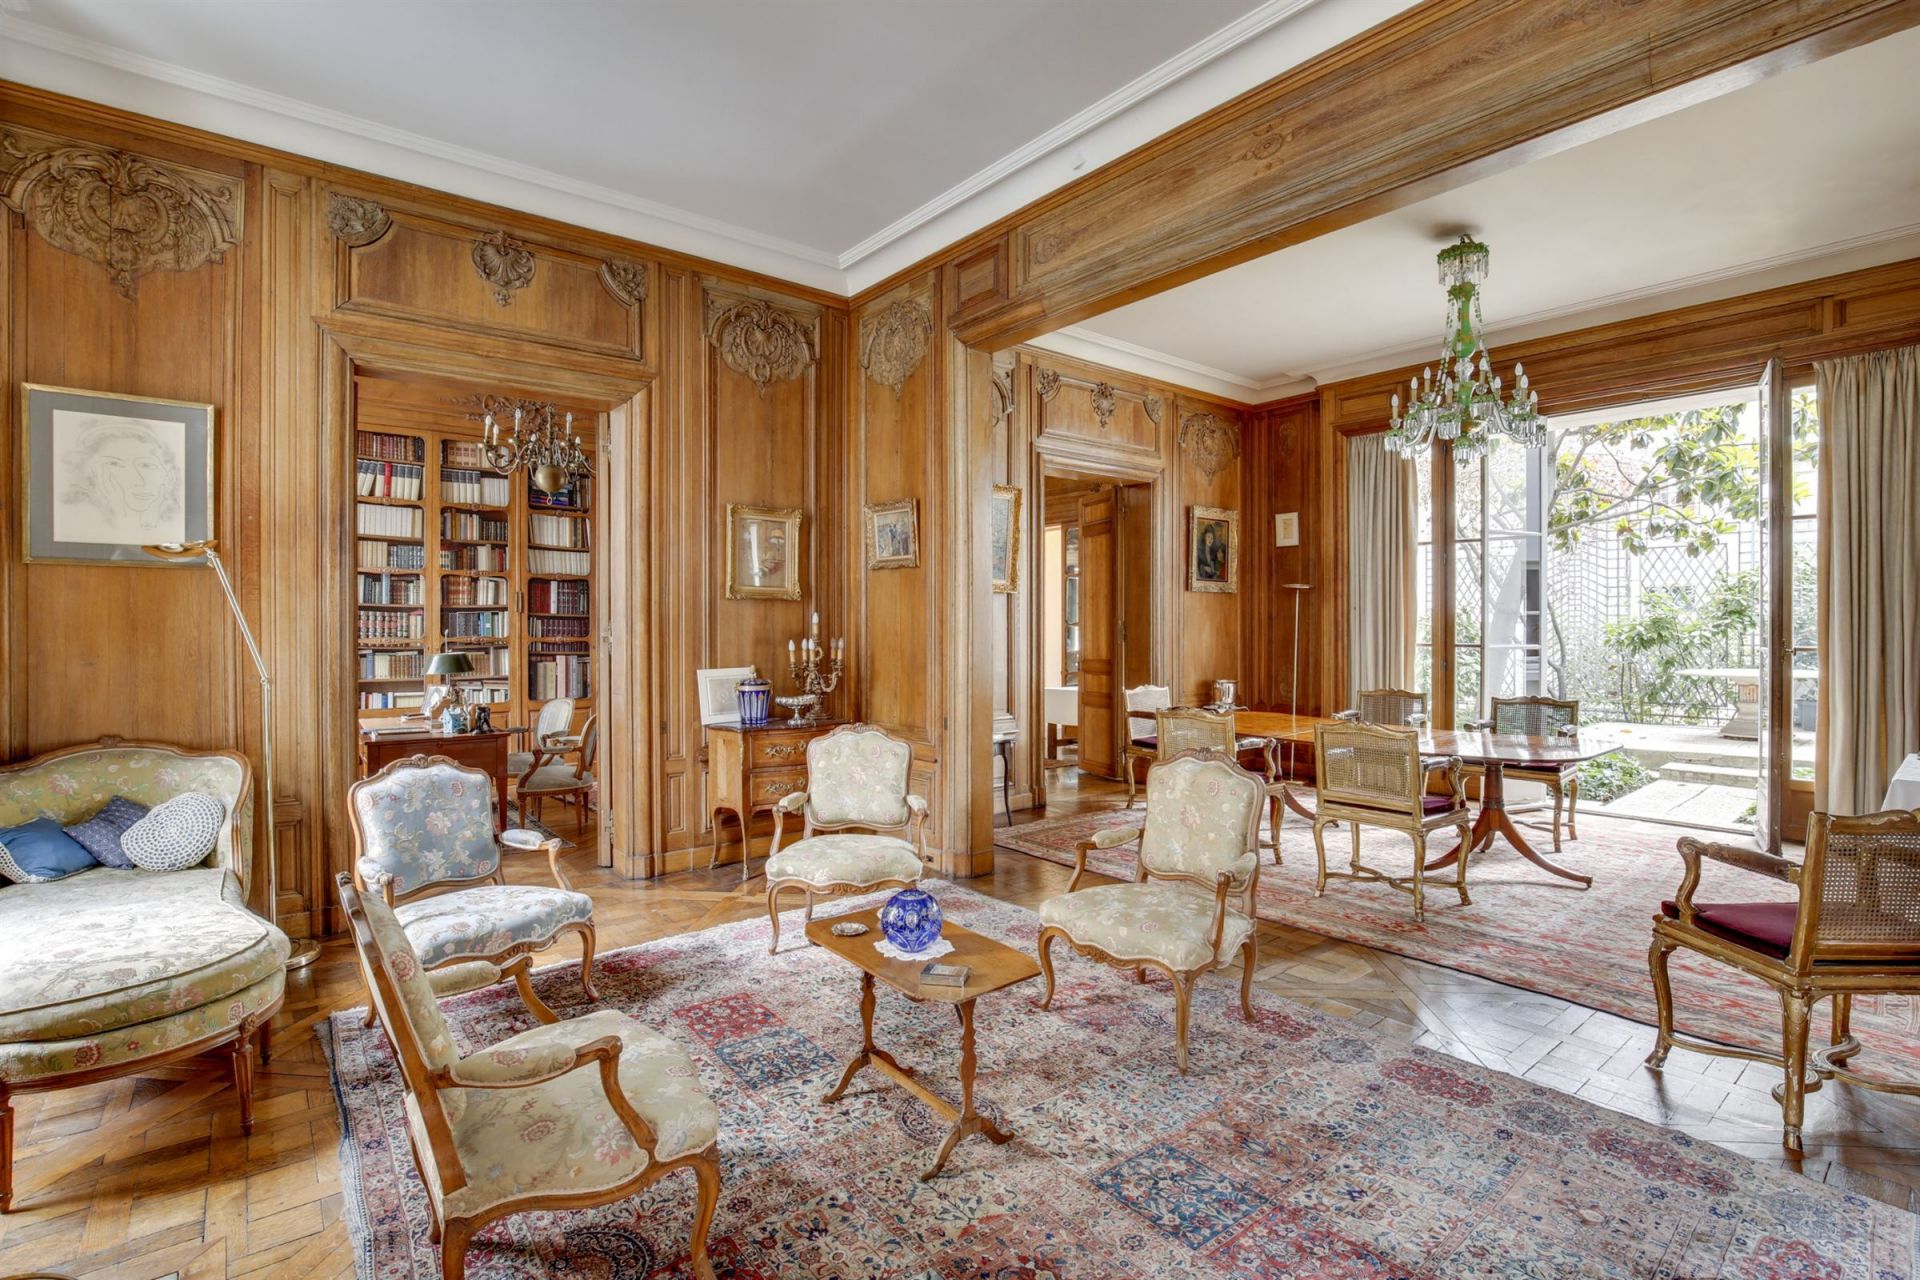 Portal Inmobiliario de Lujo en Paris, presenta mansión de lujo venta en Faubourg Saint-Germain, inmueble exclusivo para comprar y viviendas lujosas en venta en Francia.